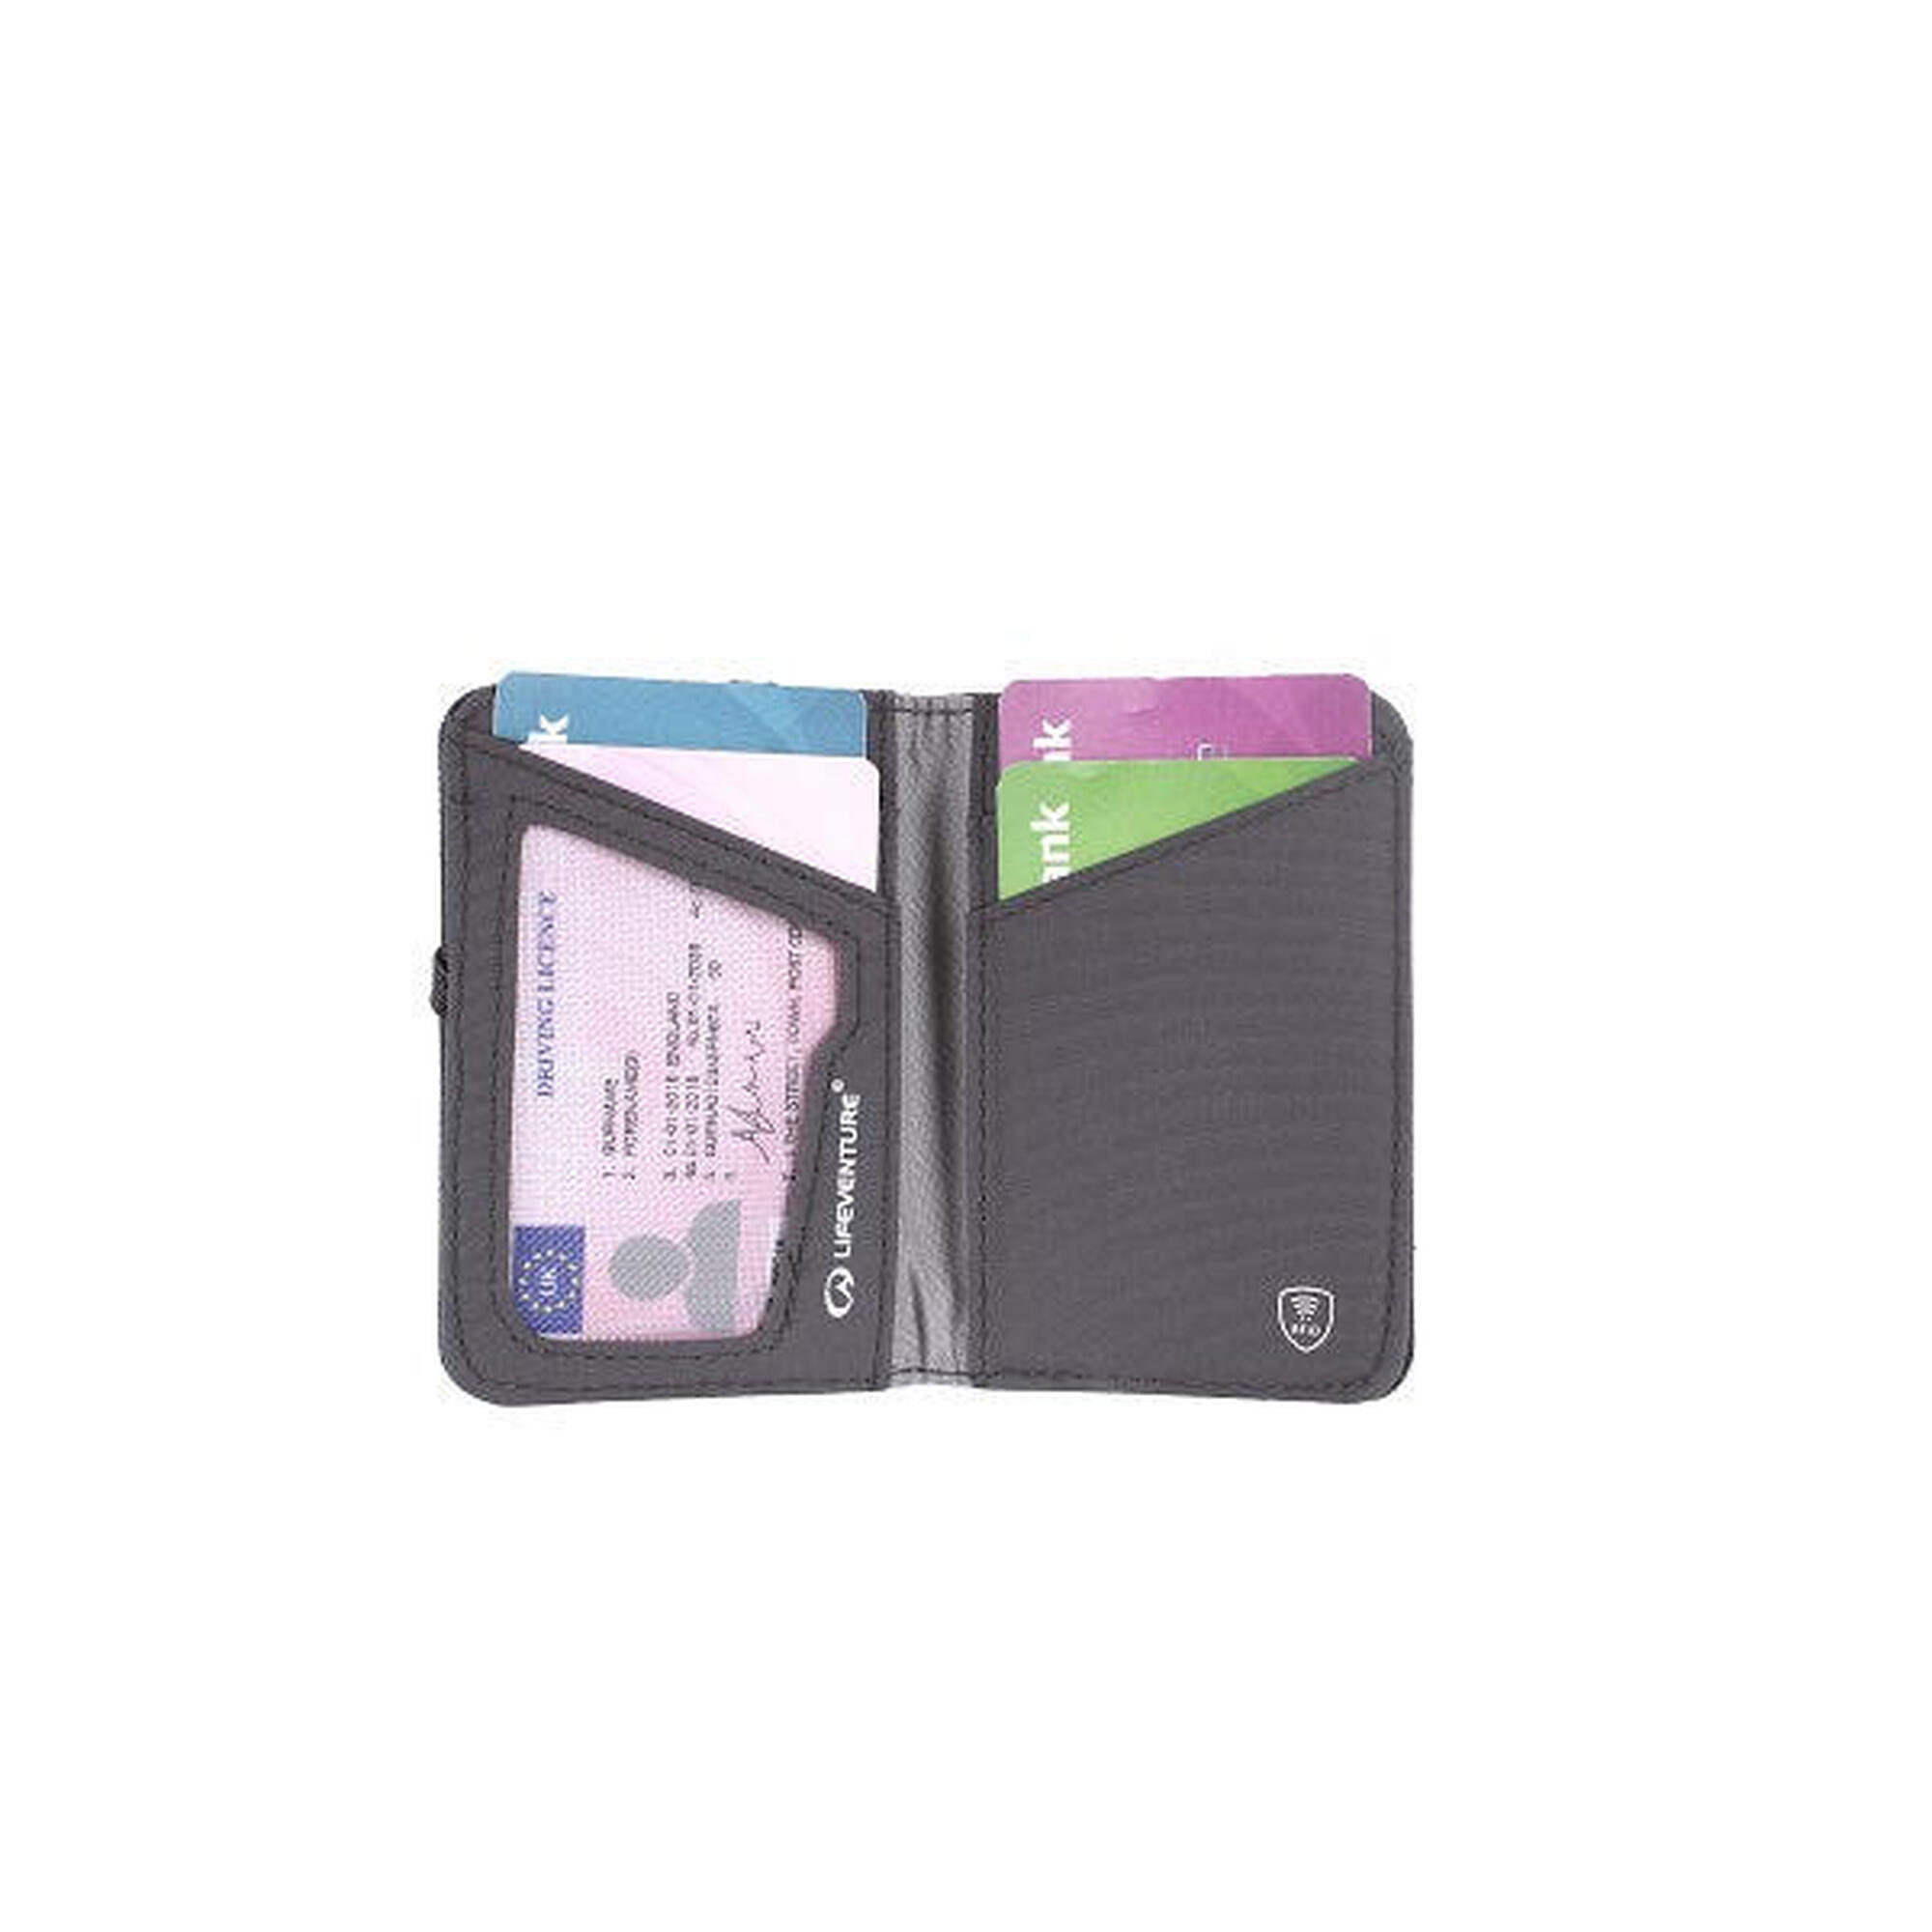 環保防盜RFID卡錢包 - 灰色